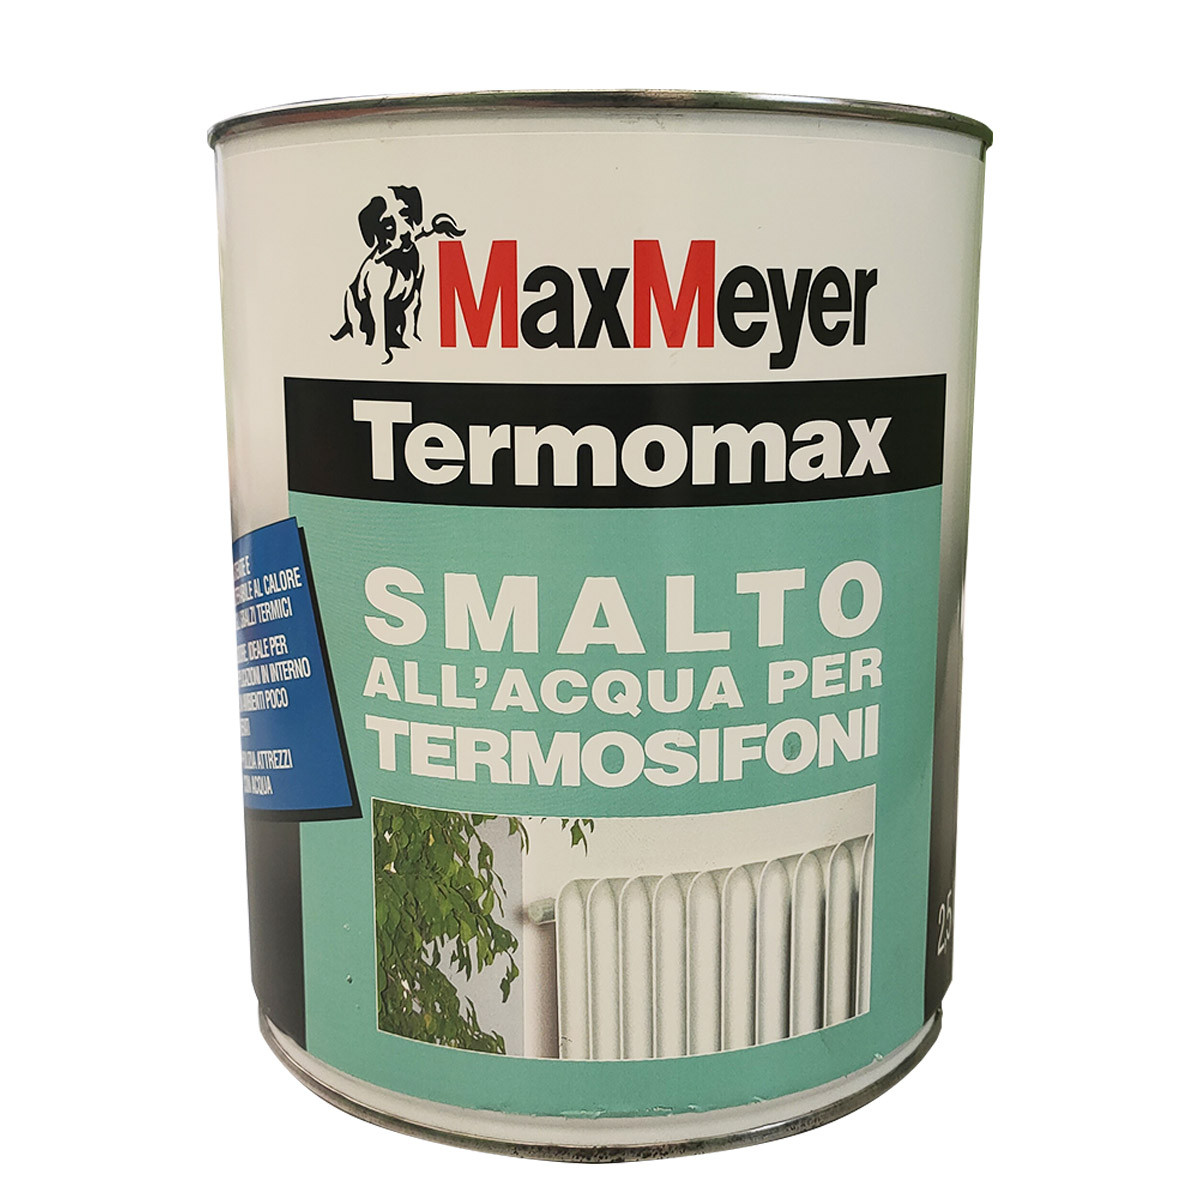 Smalto per termosifoni Termomax Max Meyer